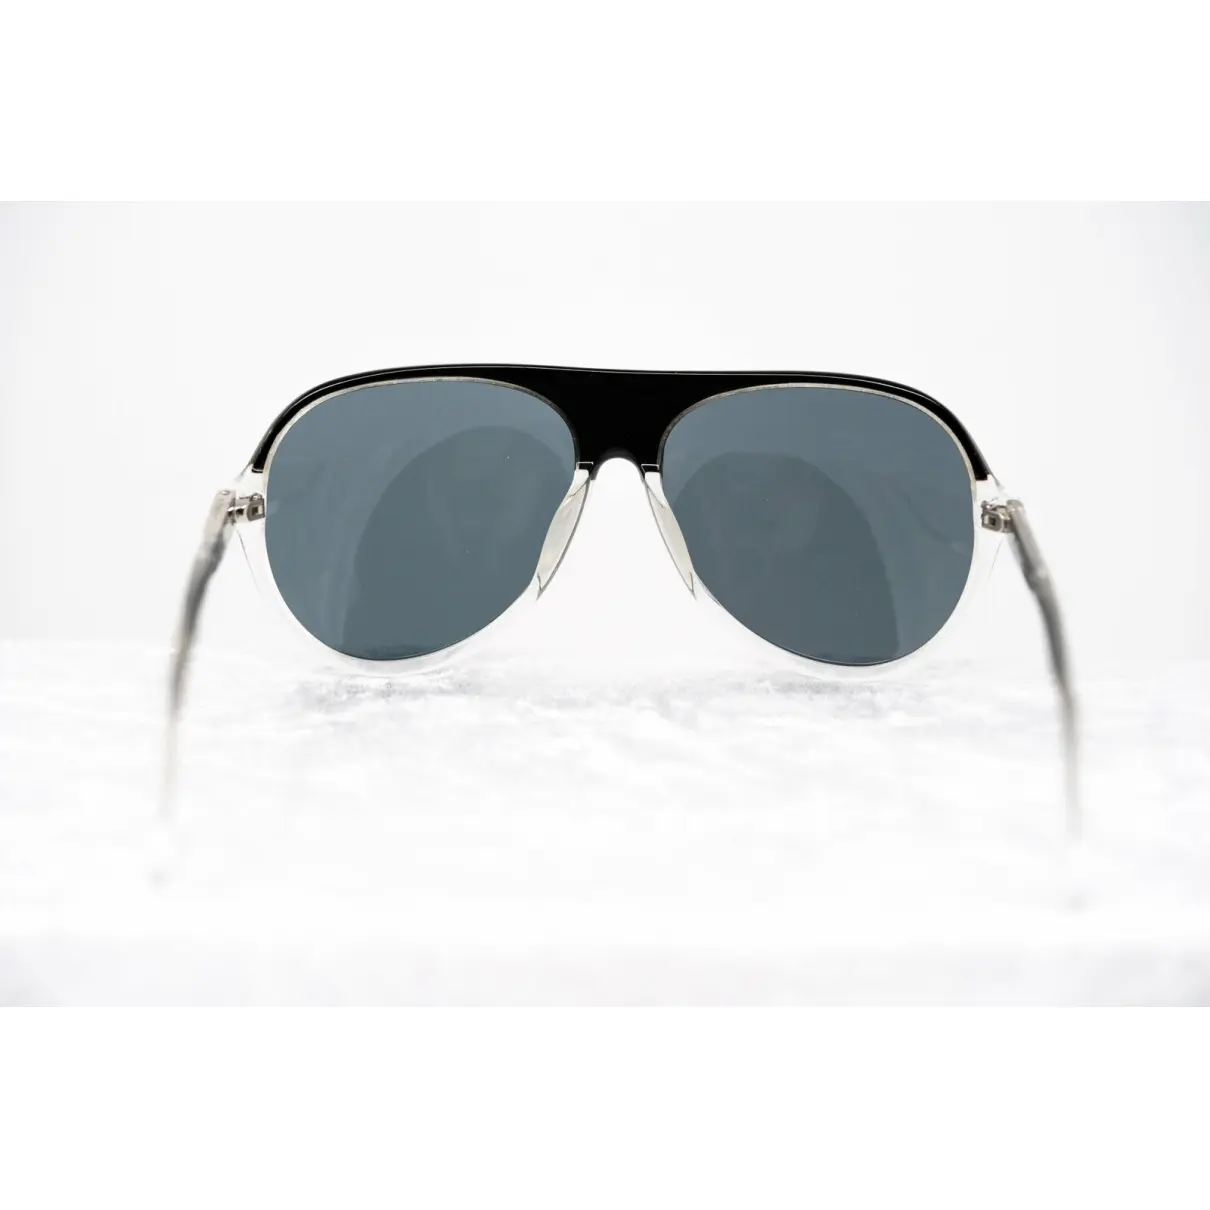 Luxury 3.1 Phillip Lim Sunglasses Men